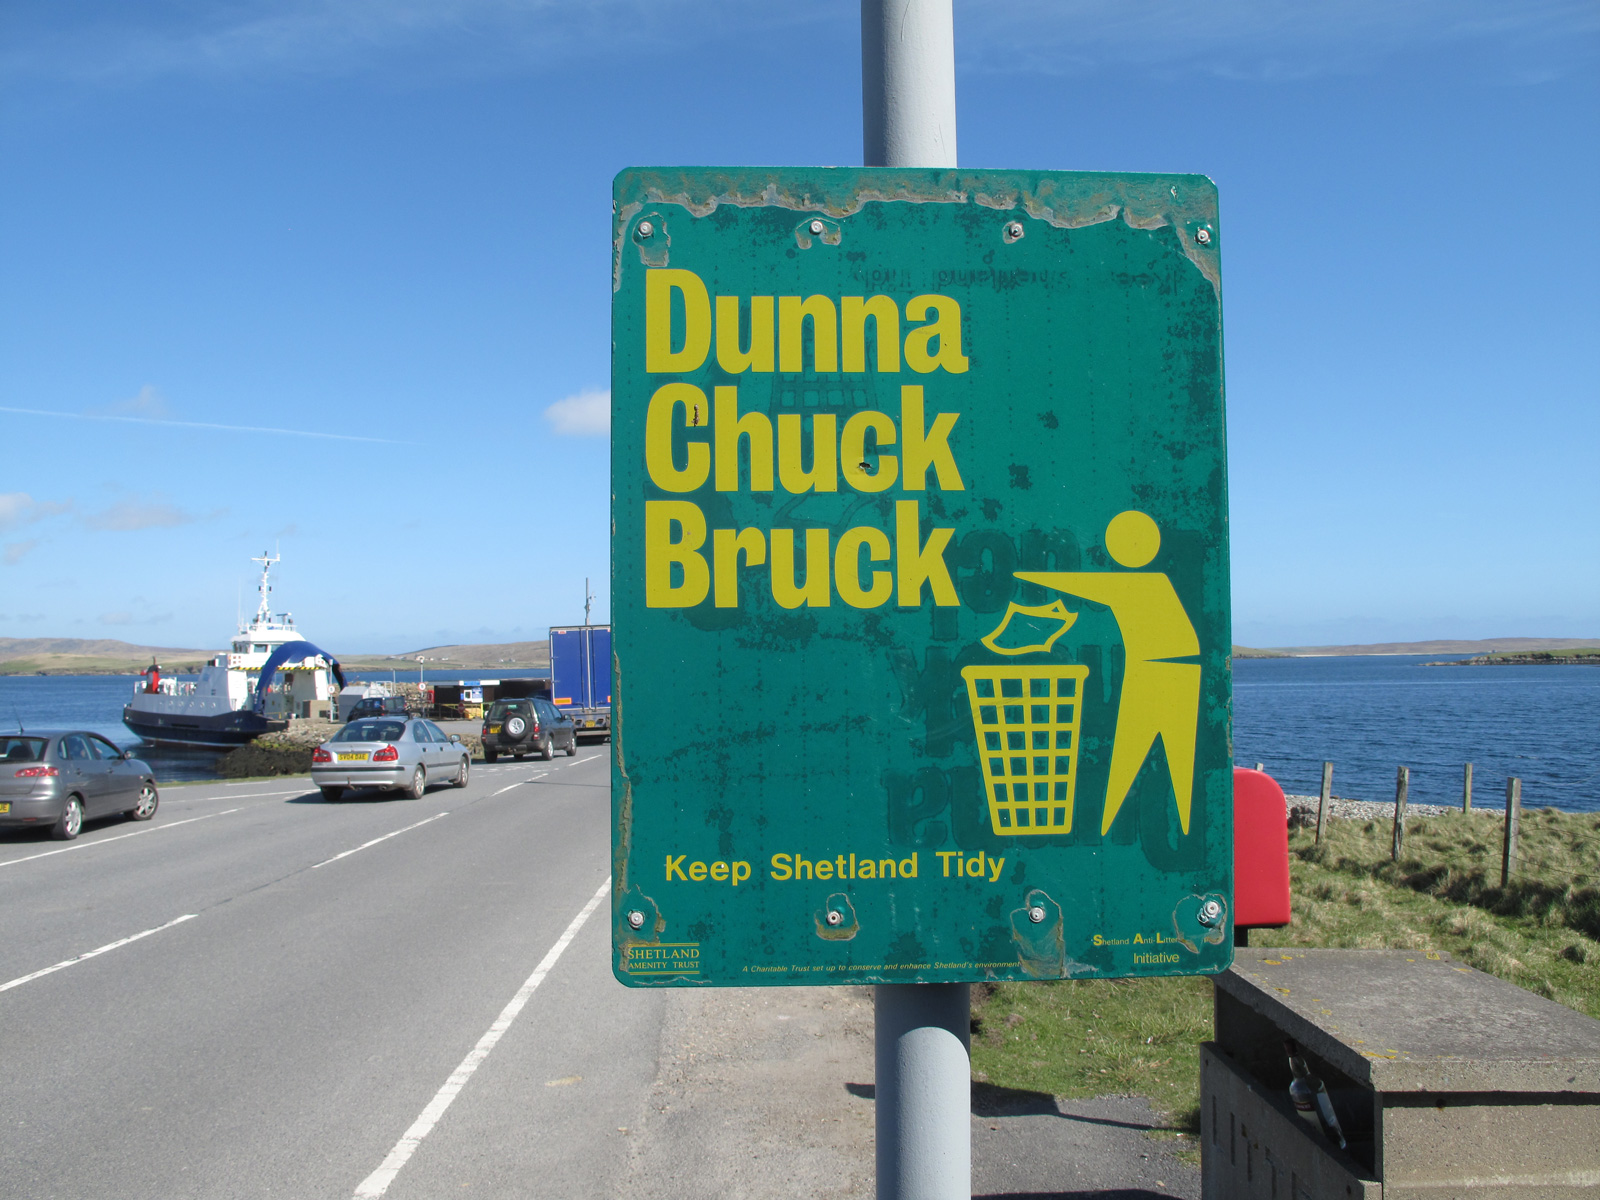 Dunna Chuck Bruck